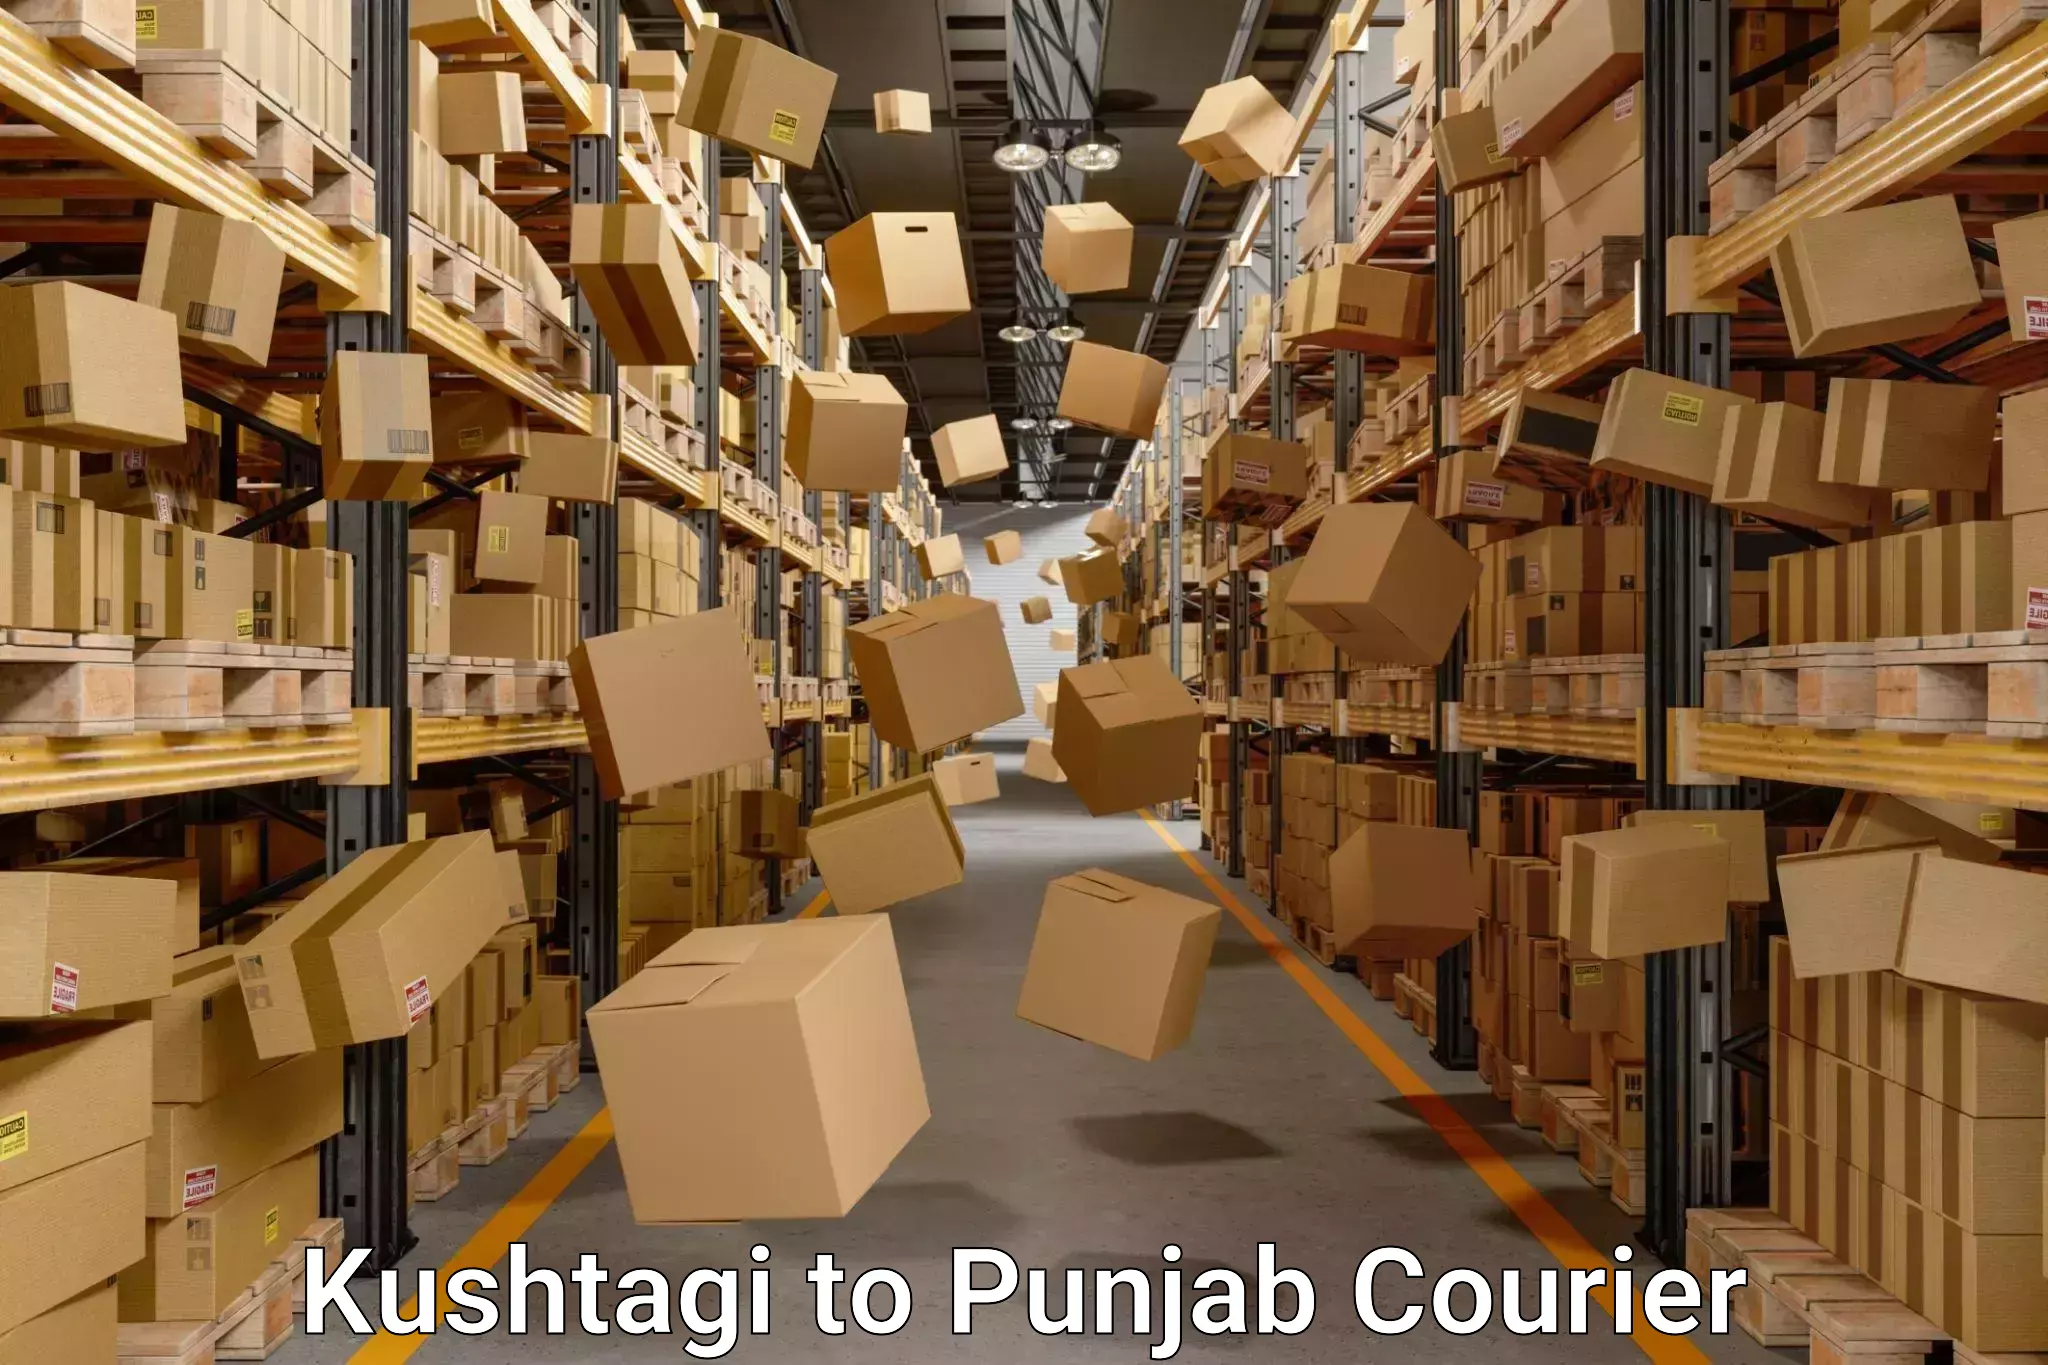 Cost-effective moving options Kushtagi to Nangal